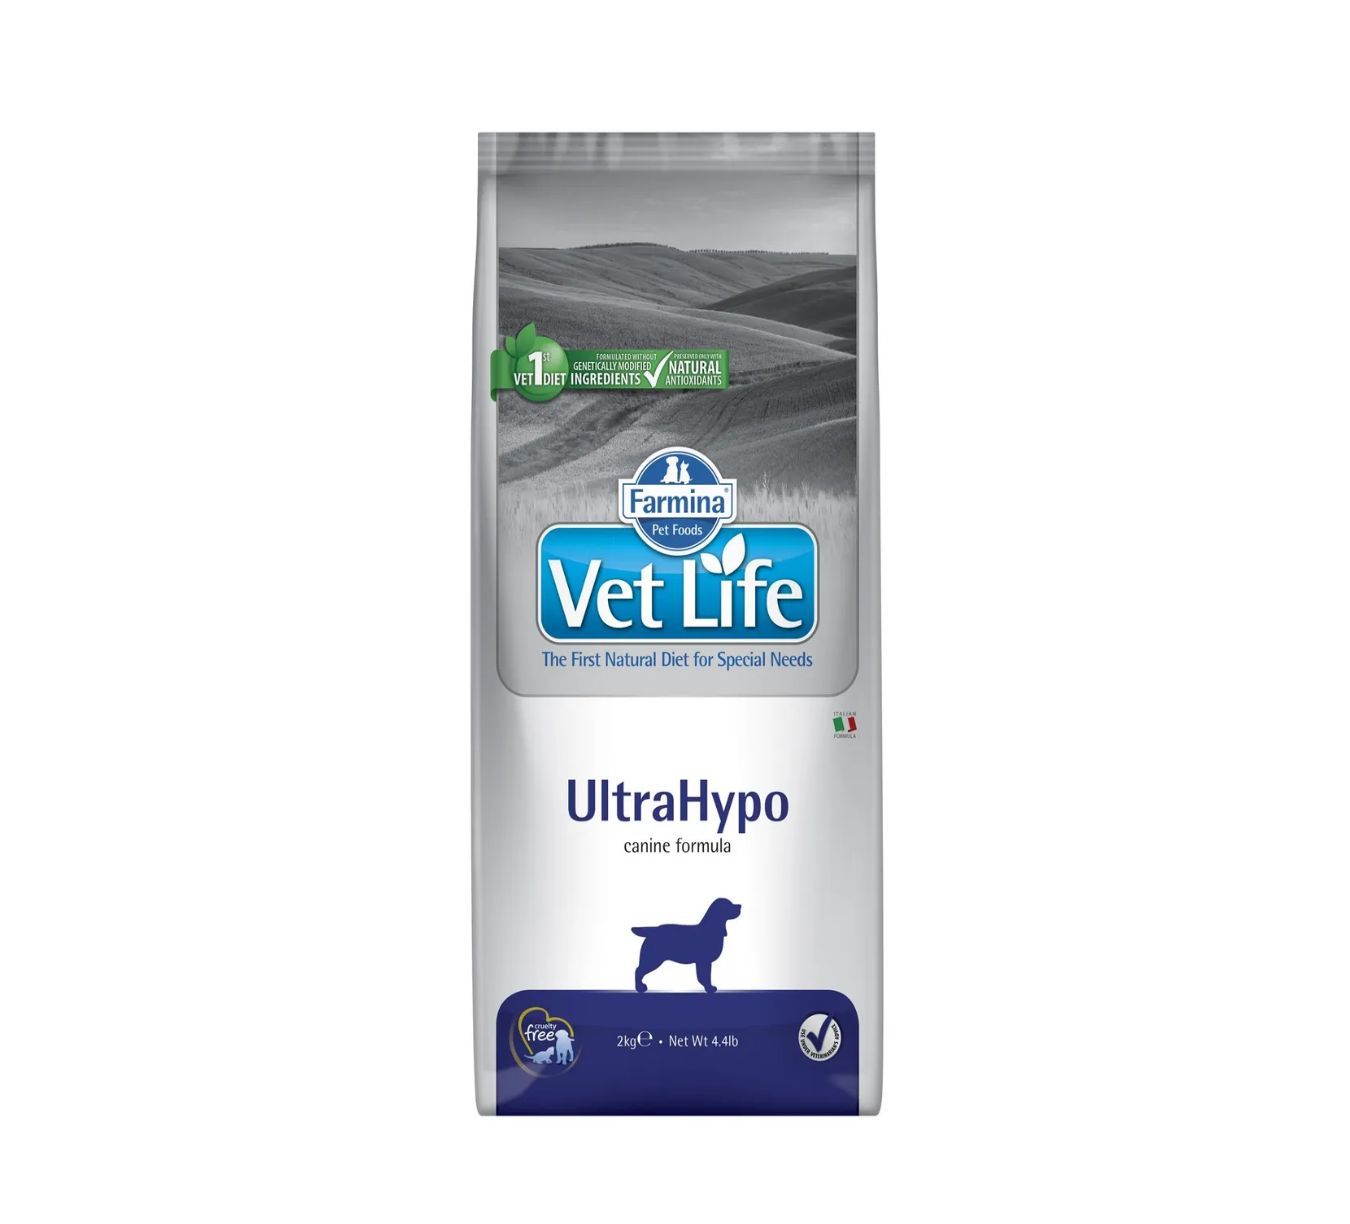 Vet life ultrahypo для кошек. Корм для собак vet Life ULTRAHYPO. Farmina ULTRAHYPO для собак. Вит лайф для собак гипоаллергенный ультрагипо. Корм для собак VETLIFE ULTRAHYPO 2 кг как выглядит внутри.